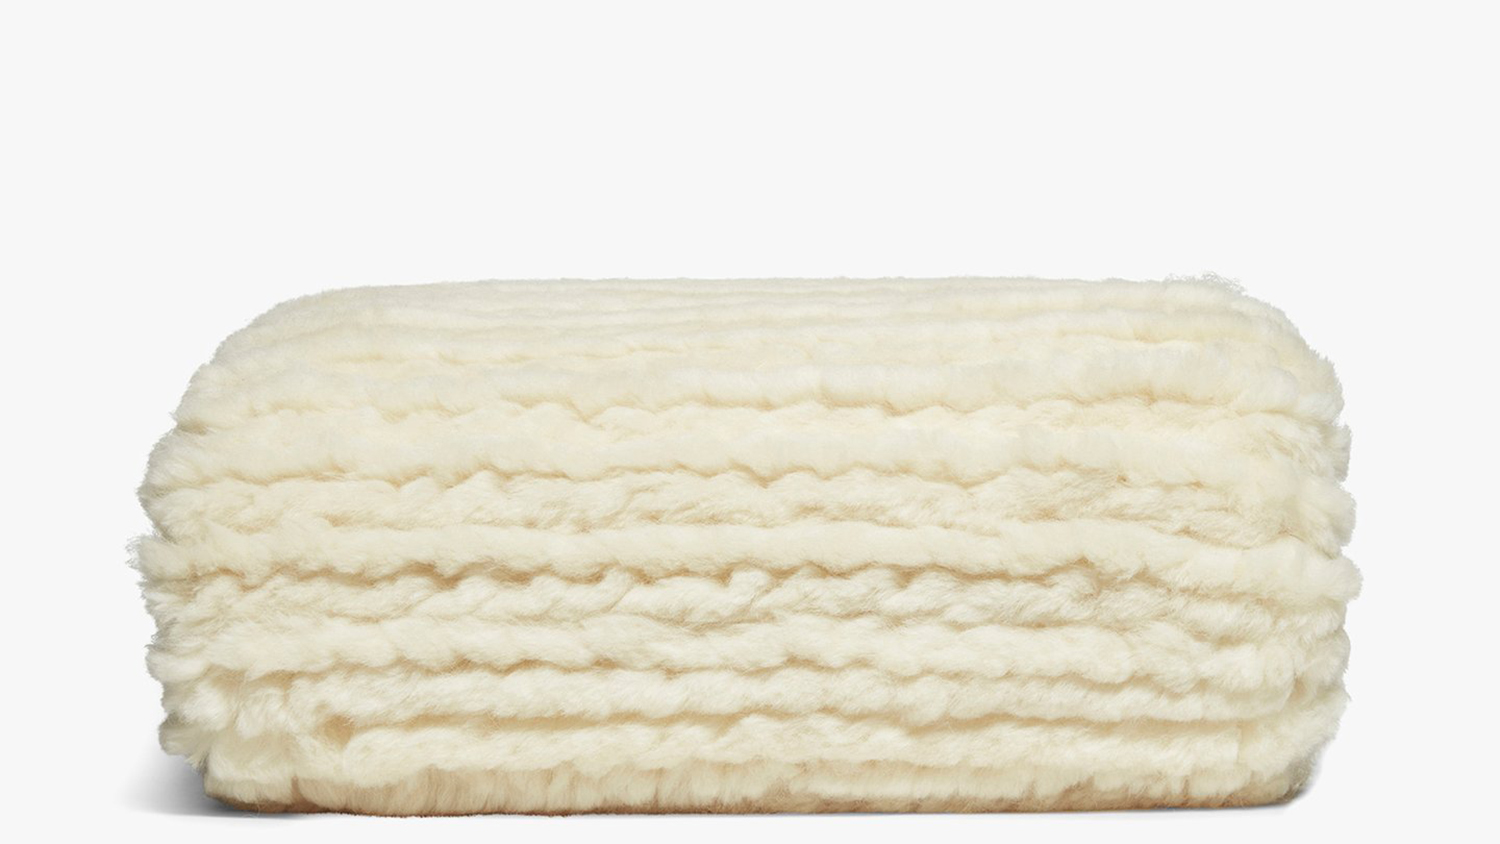 wool mattress topper